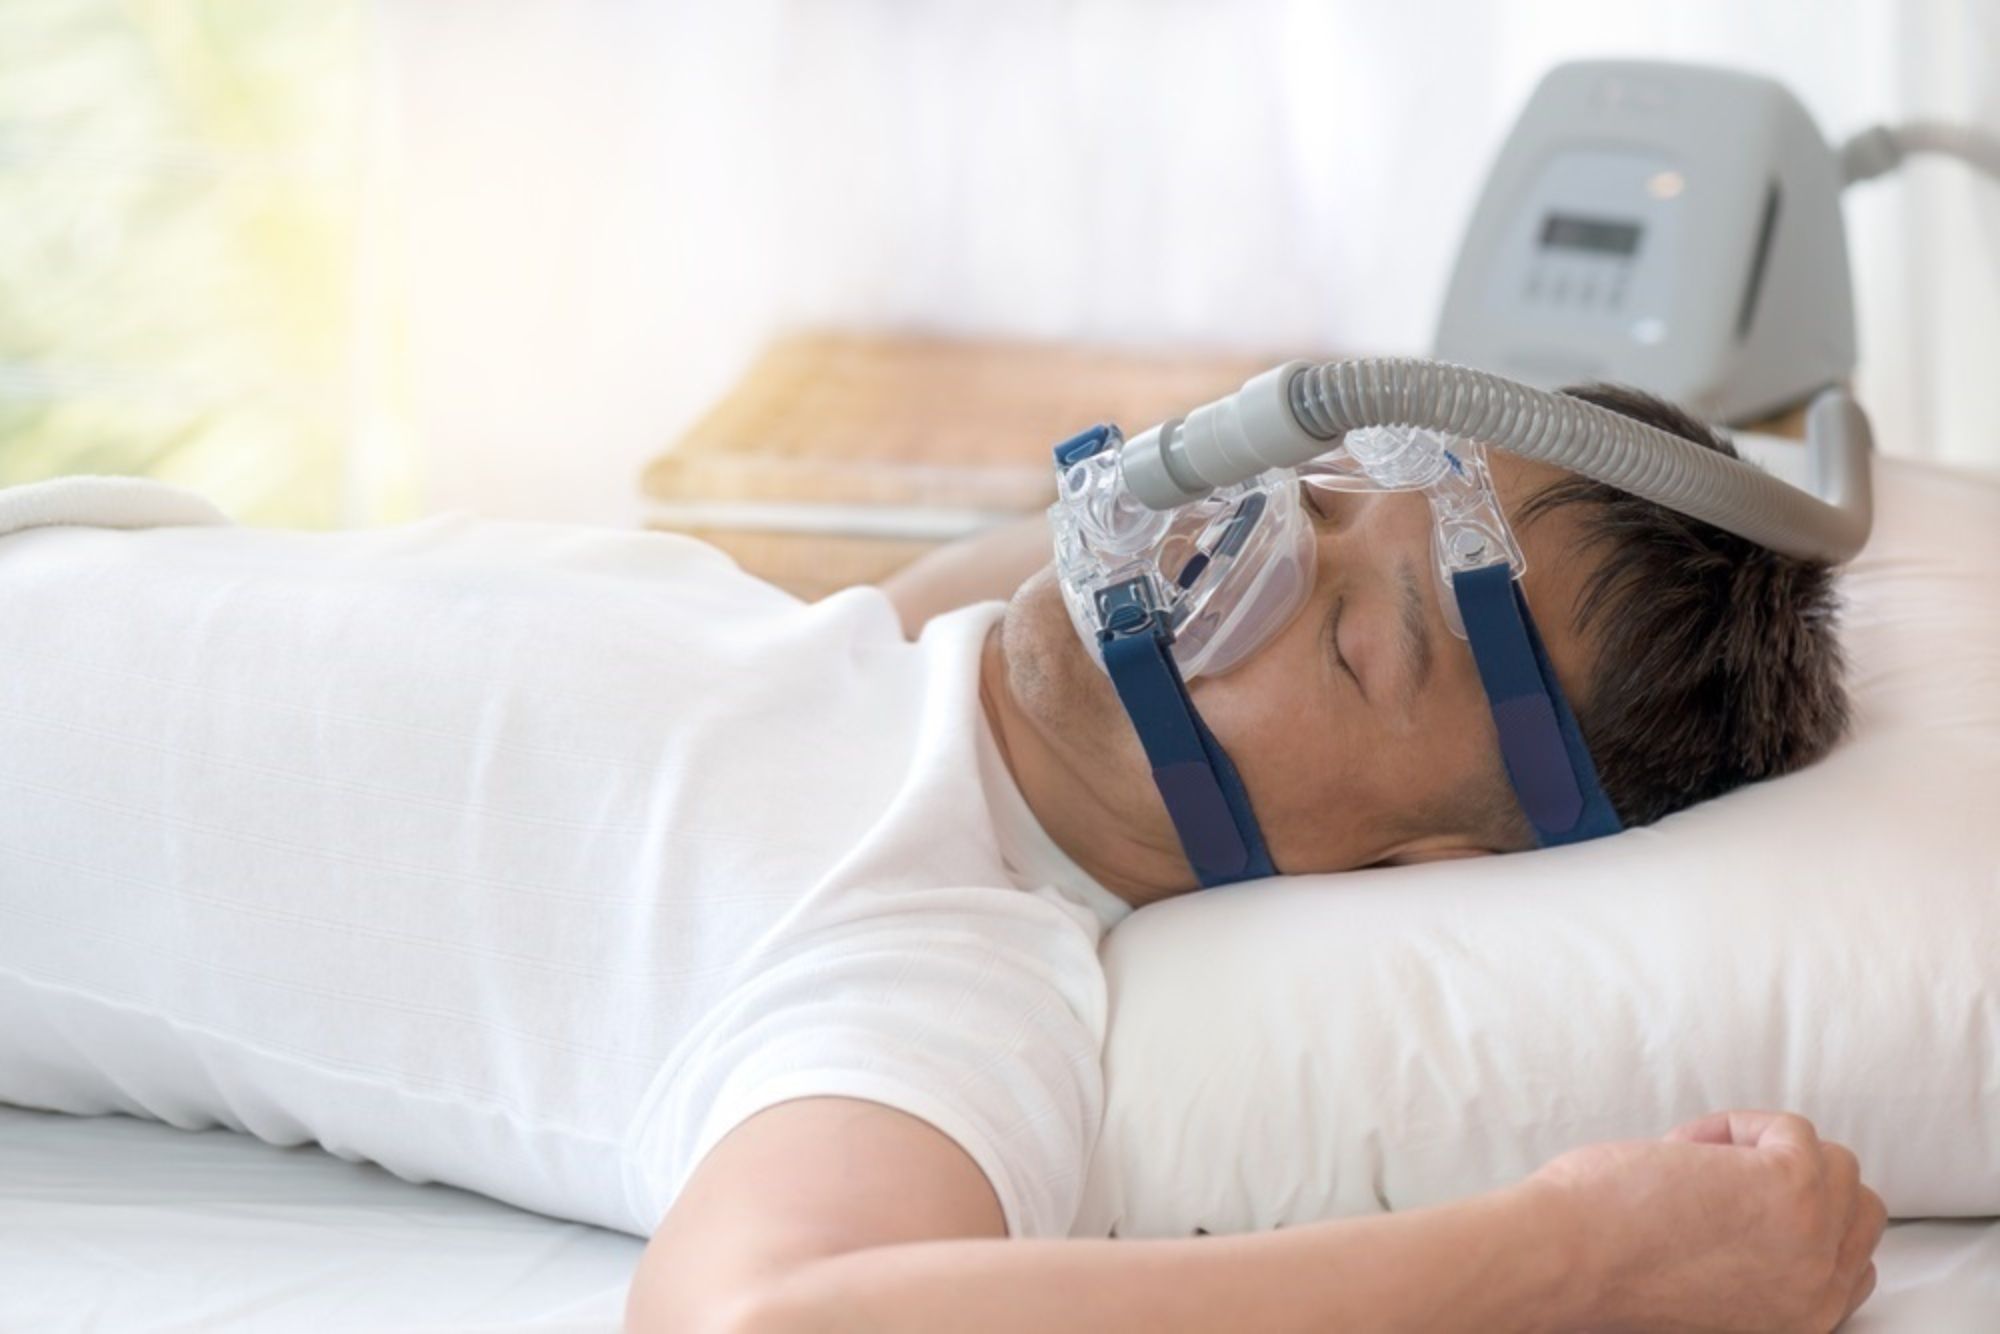 Alerta sanitaria por unas mascarillas para la apnea del sueño que pueden provocar "graves lesiones"